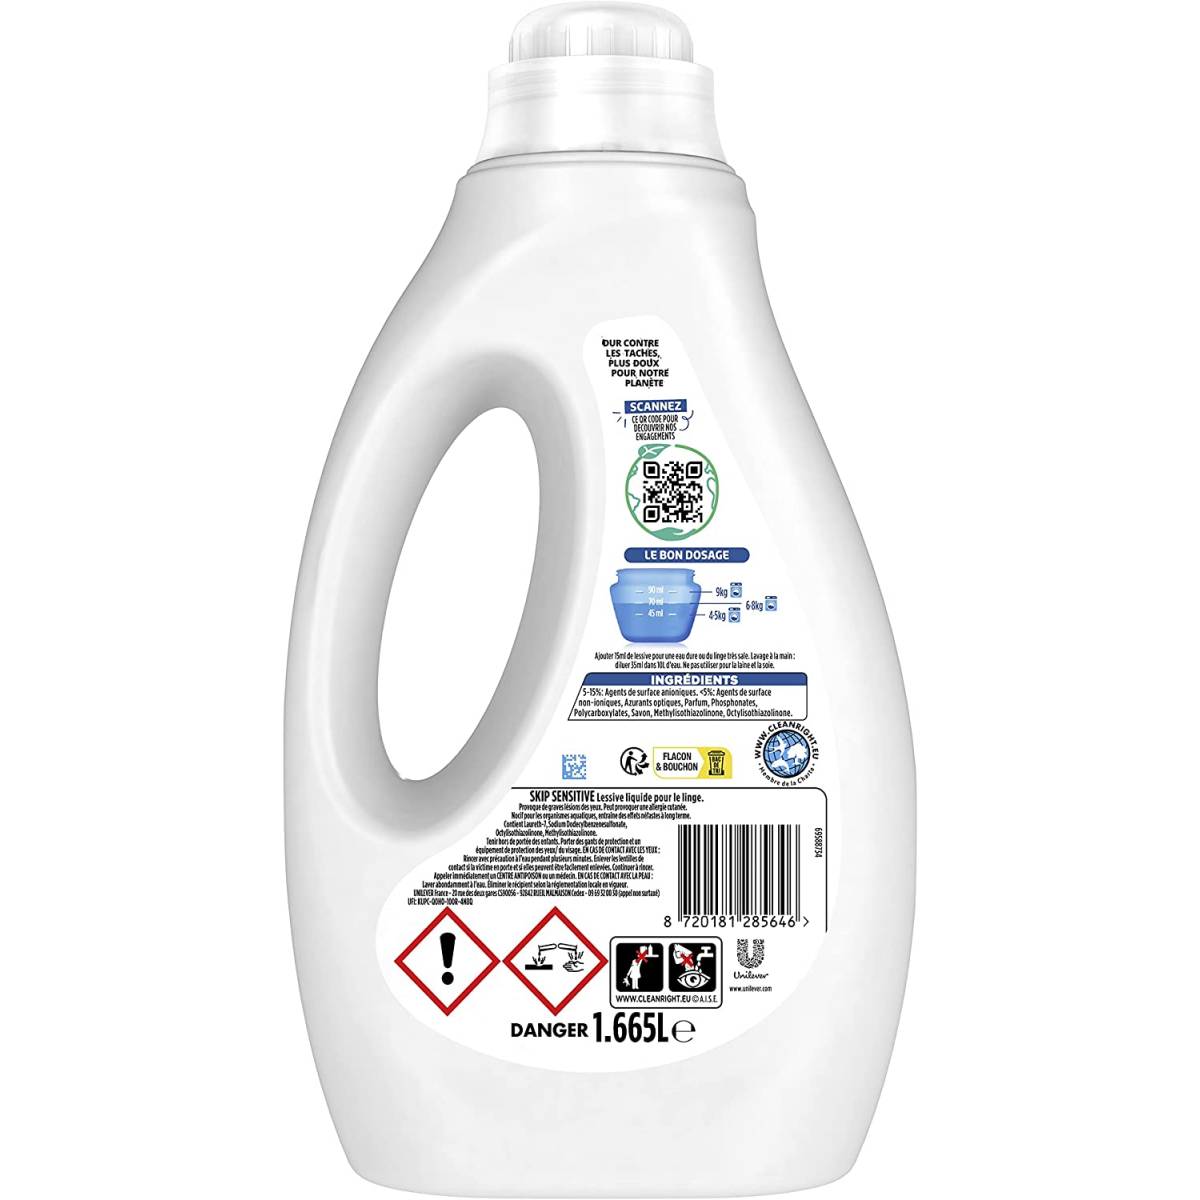 SKIP Sensitive Liquid Detergent Special Sensitive Skin 1.665L